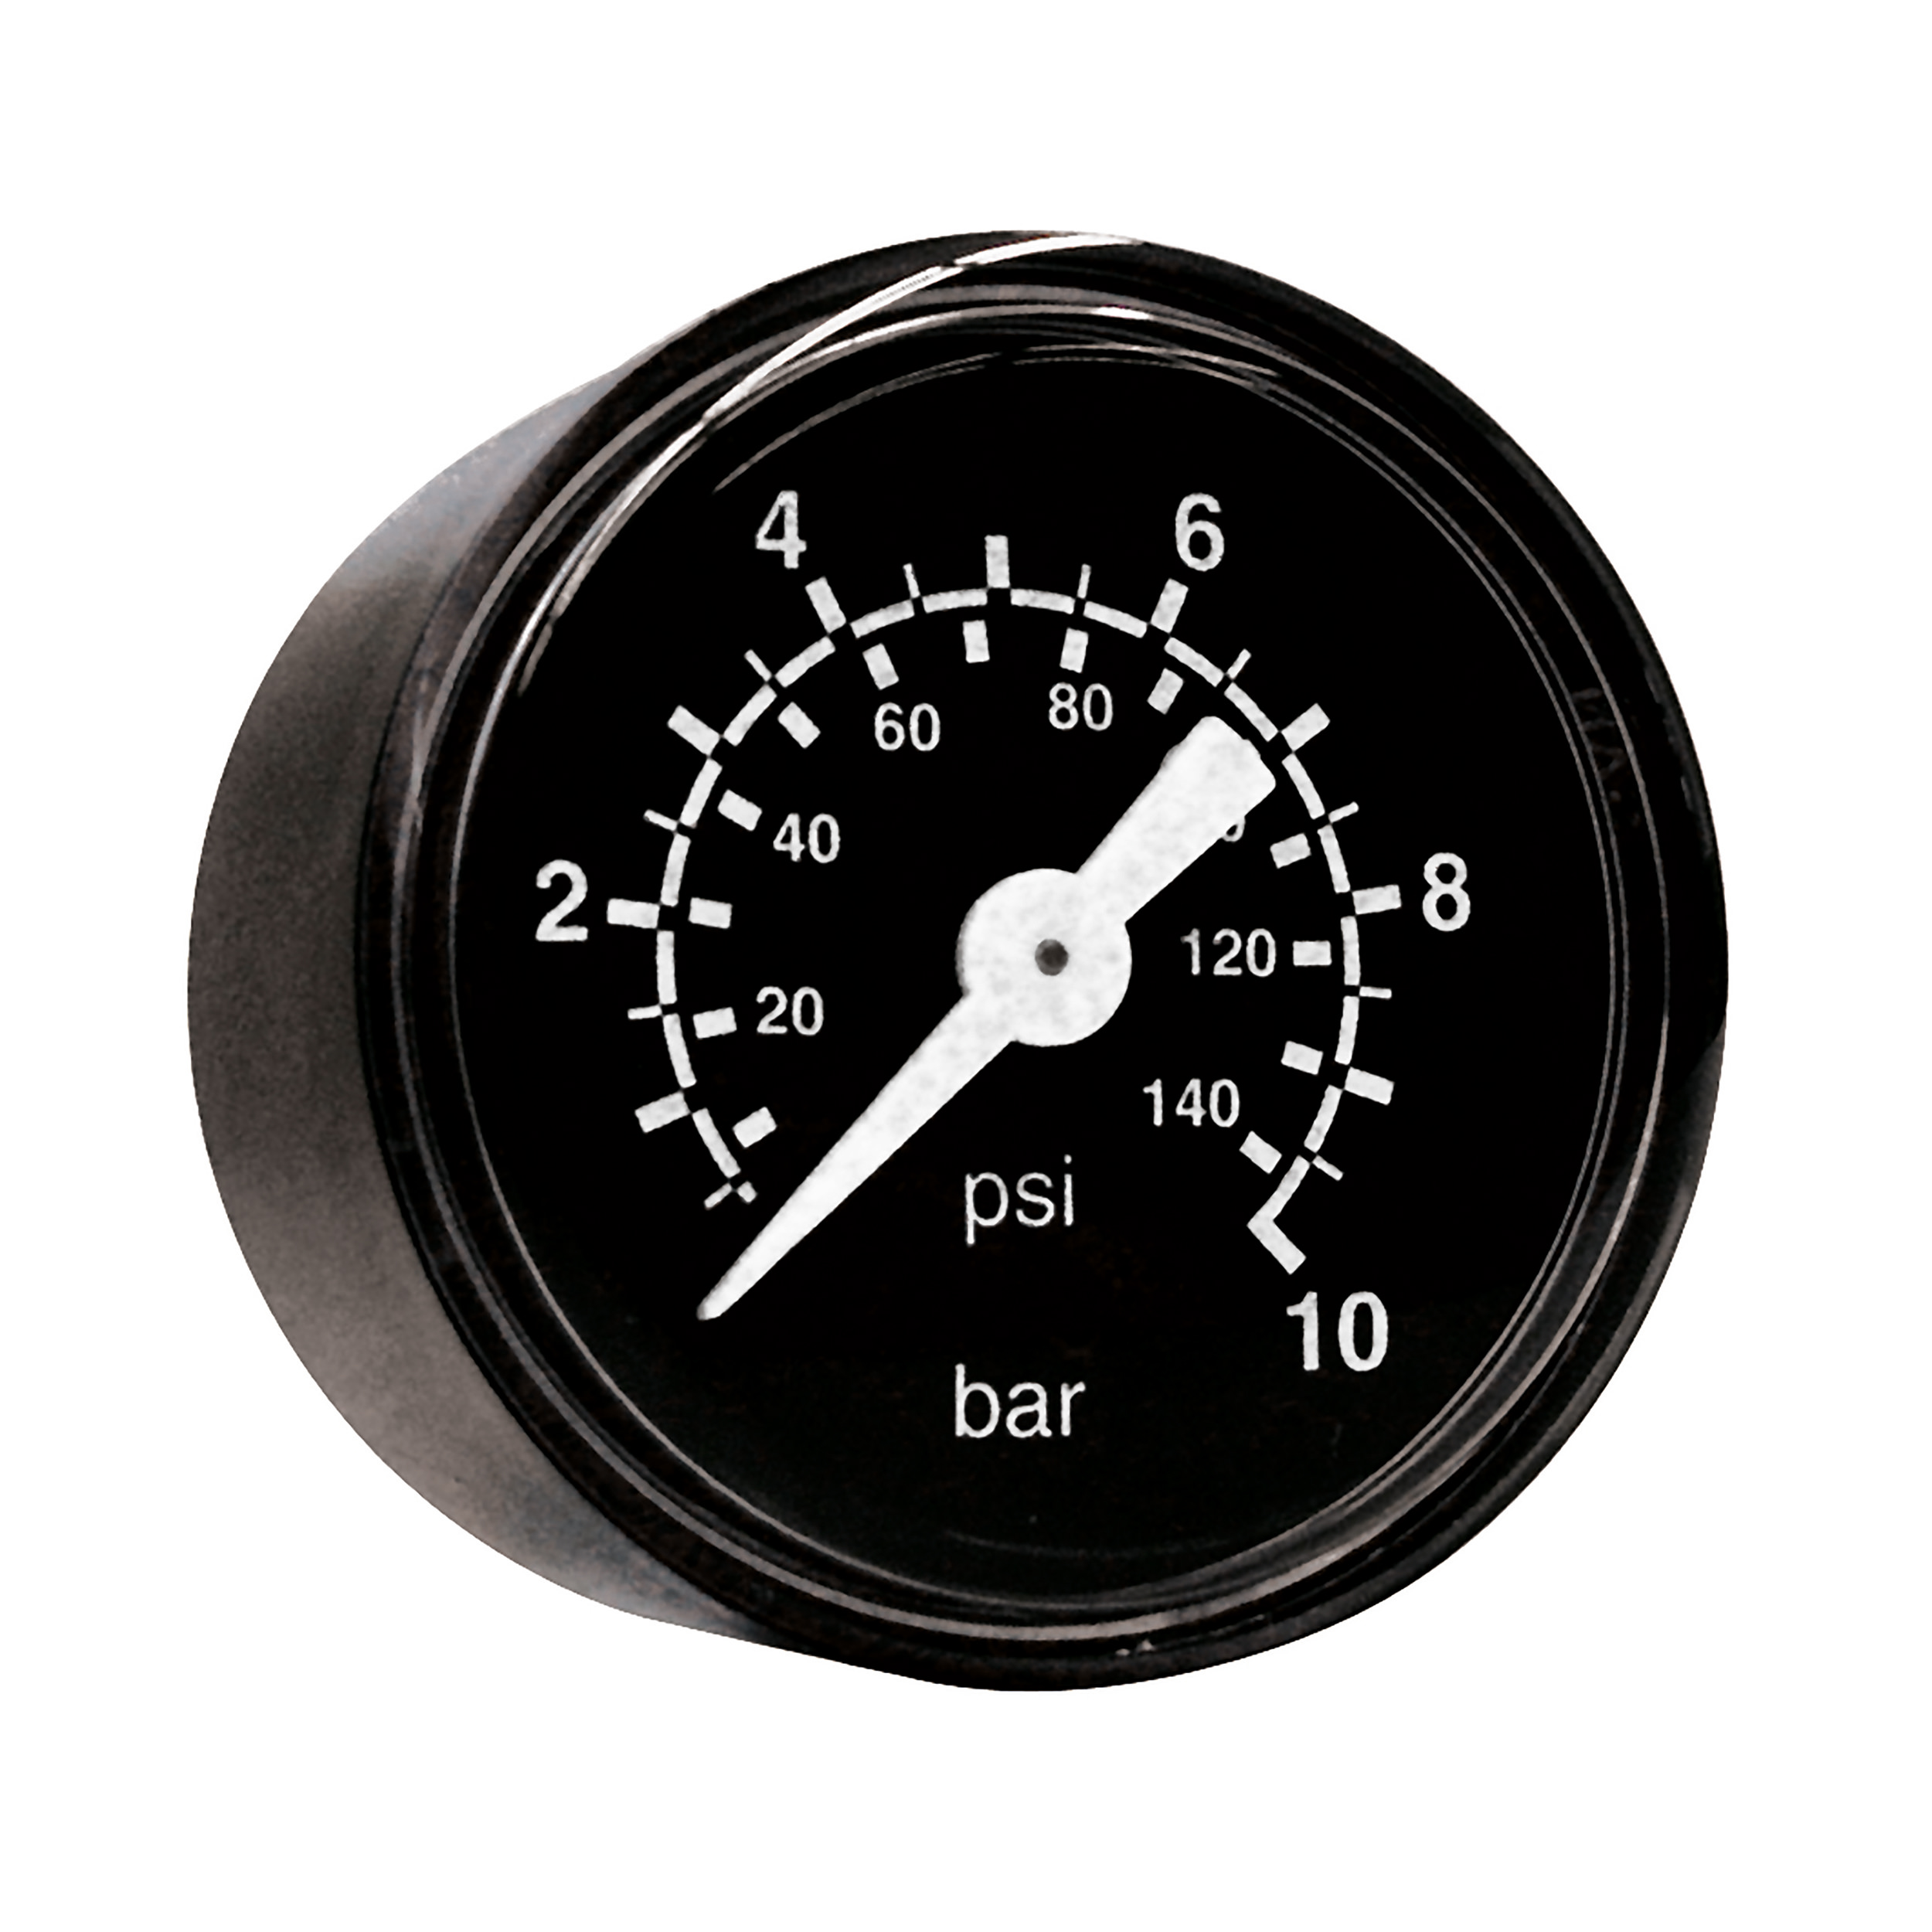 Rohrfeder-Manometer Ø40, Klasse 2,5, Grund/Aufdruck: schwarz/weiß, Anschluss waagrecht: G¼, Anzeigebereich: 0–16 bar